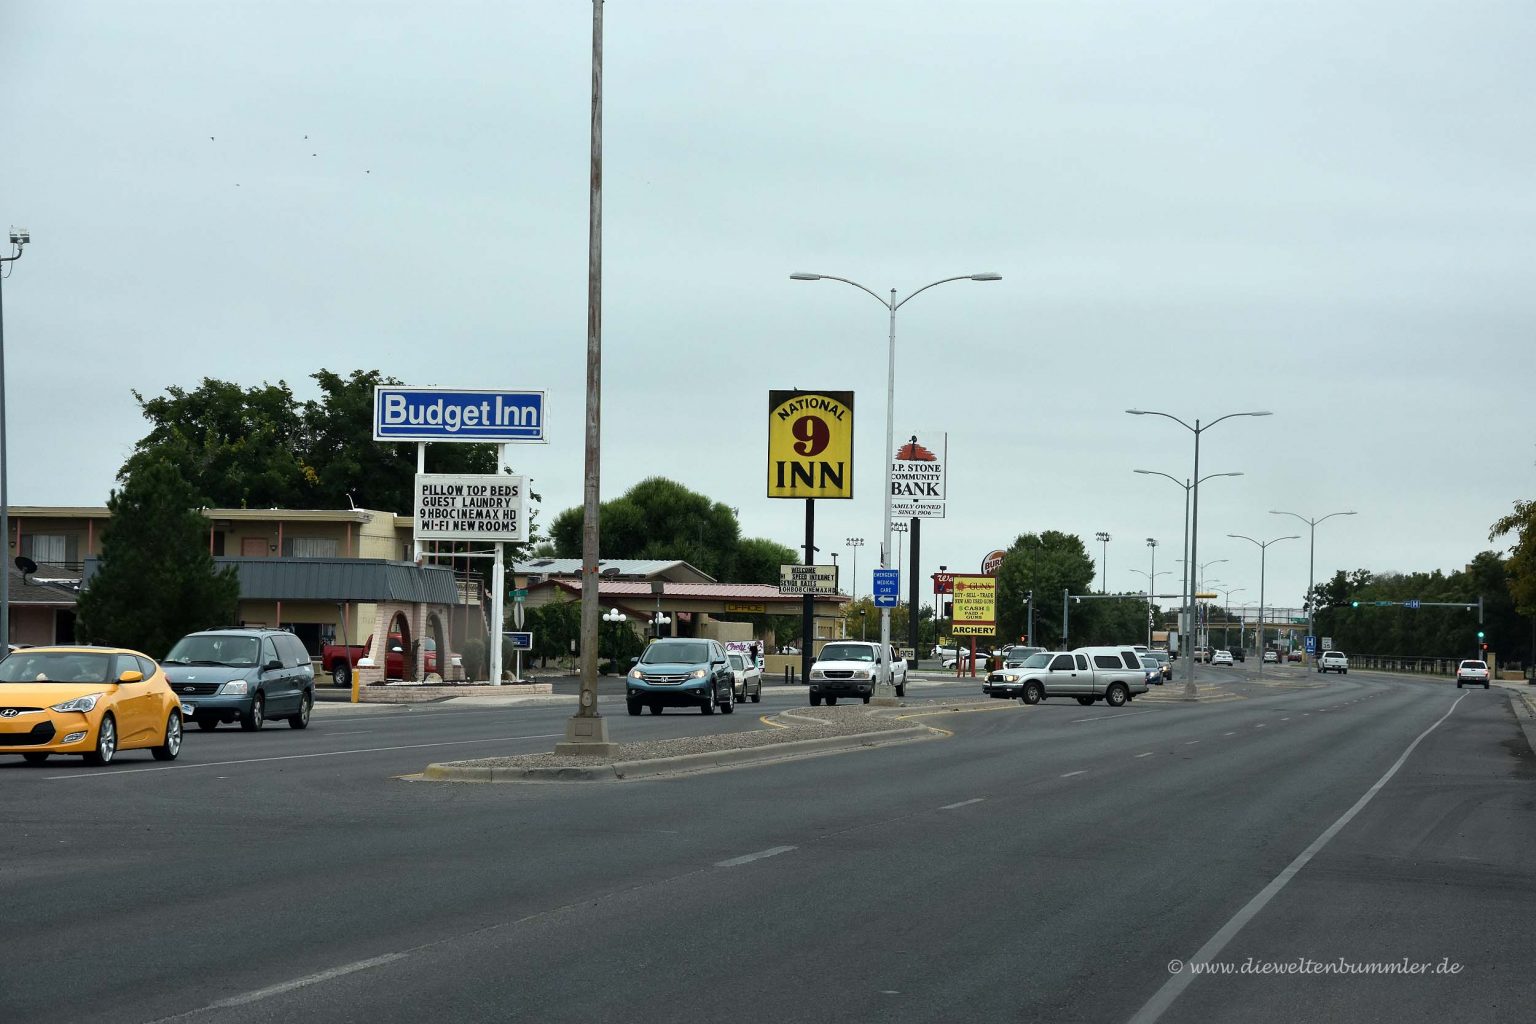 Typische Straße in amerikanischer Kleinstadt